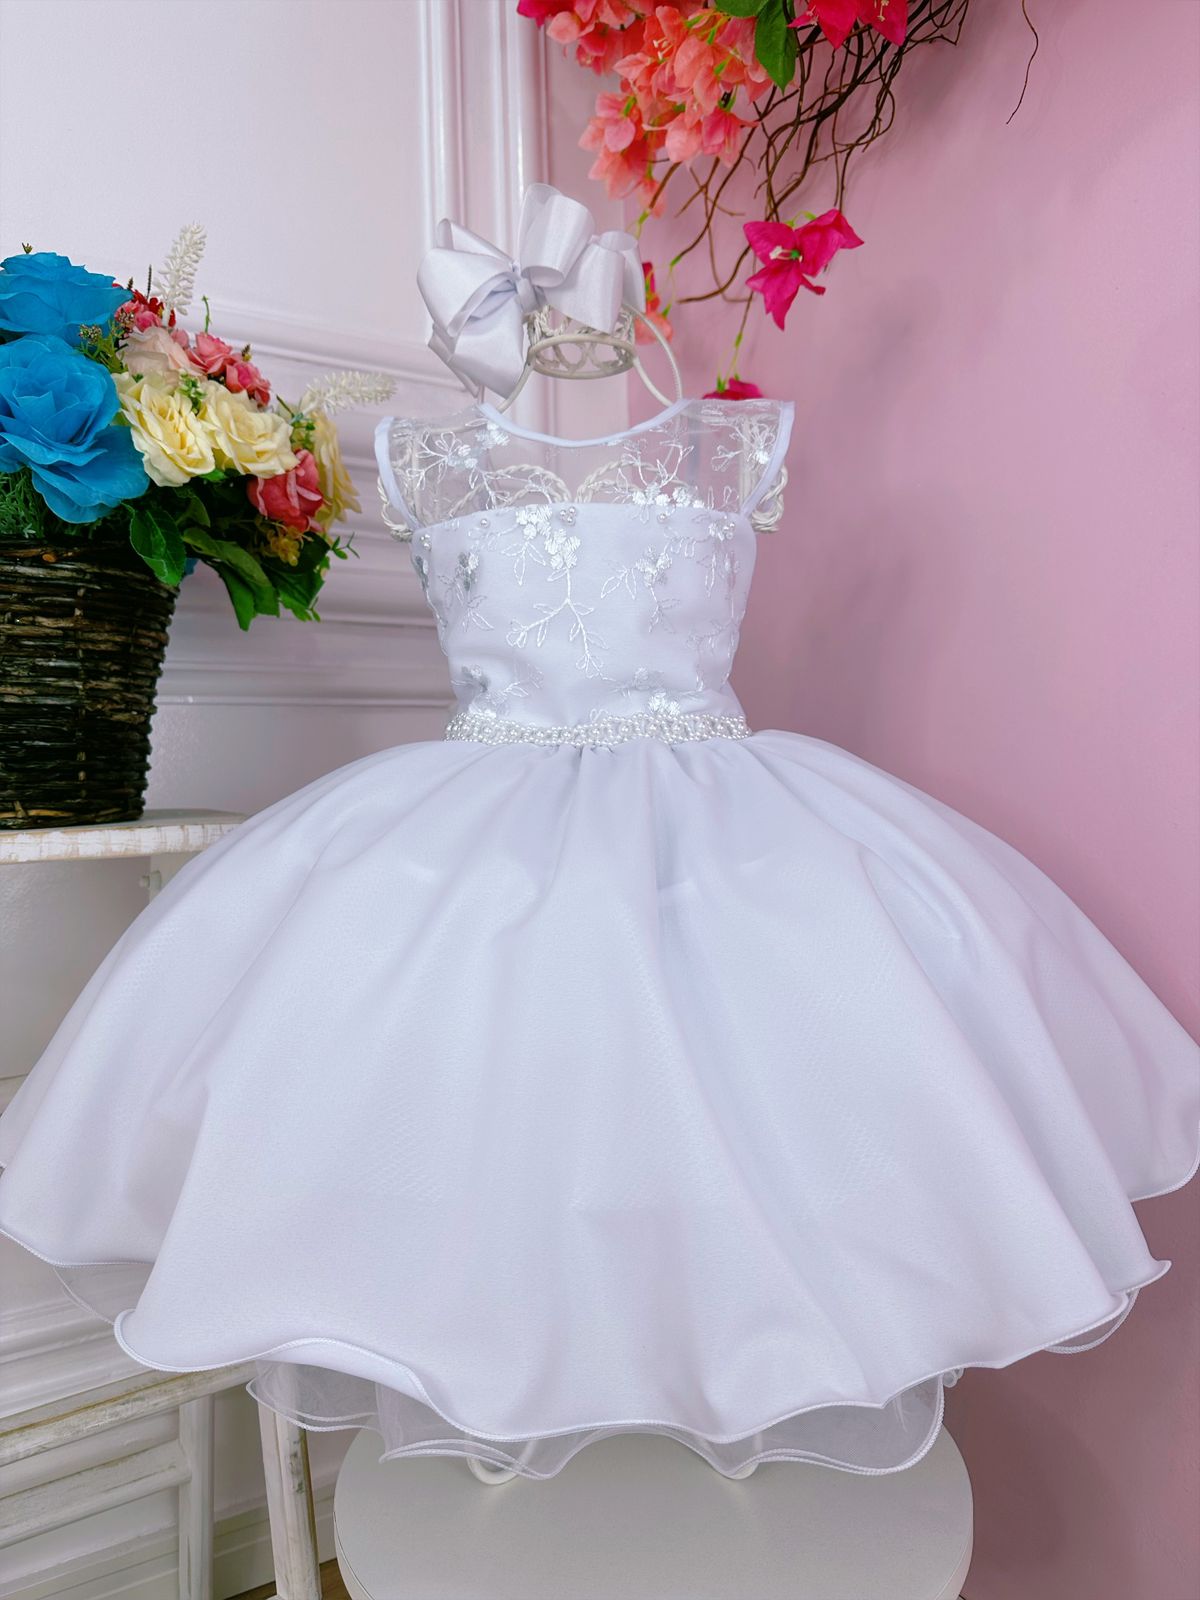 Vestido Infantil Branco C/ Renda Cinto de Pérolas Luxo